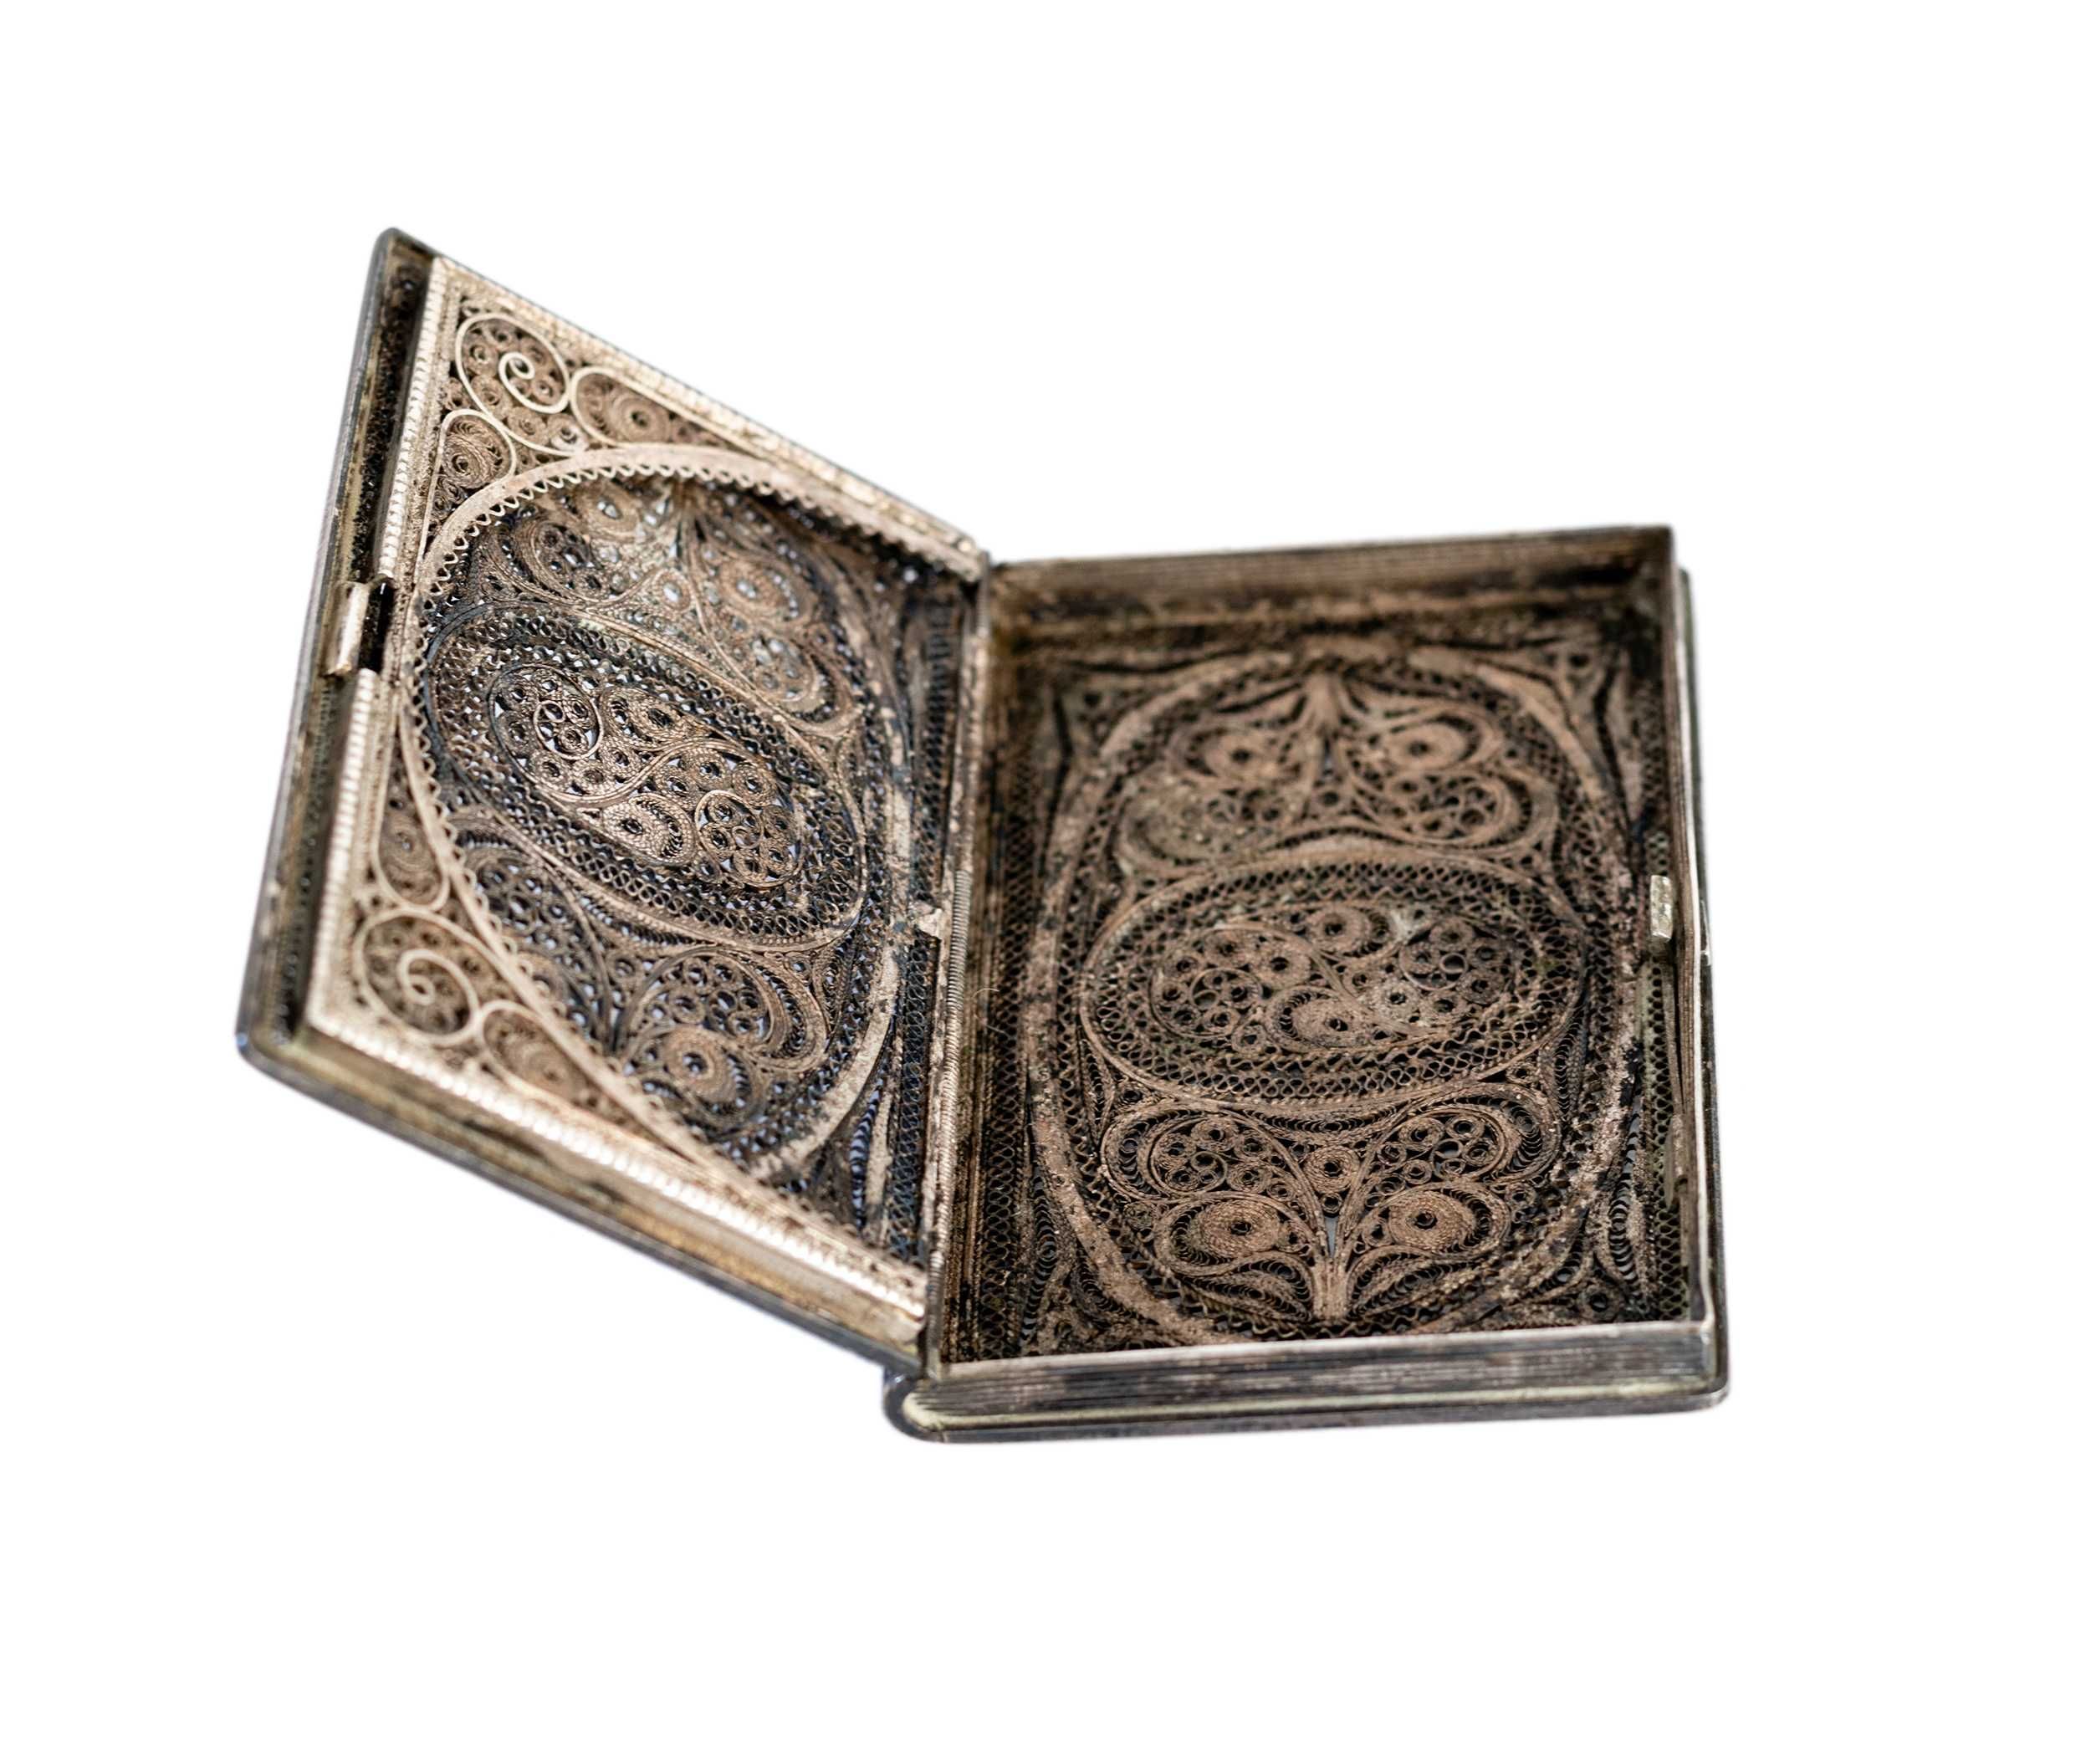 Porta cartões filigrana prata | século XIX